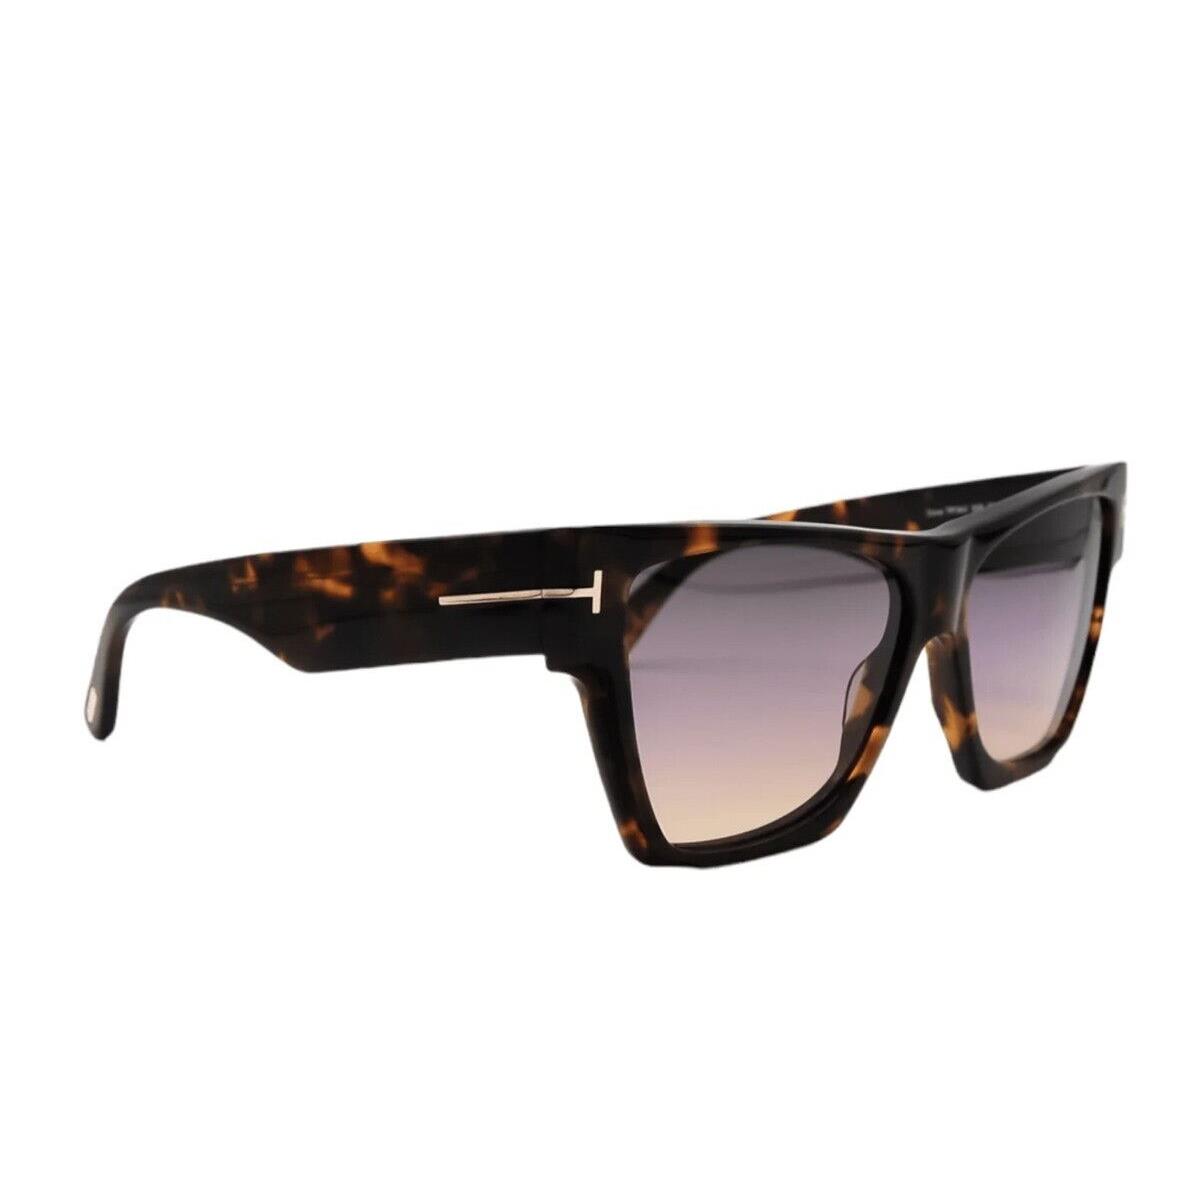 Tom Ford Dove FT0942 55B Sunglasses Colored Havana Frame Gradient Lenses